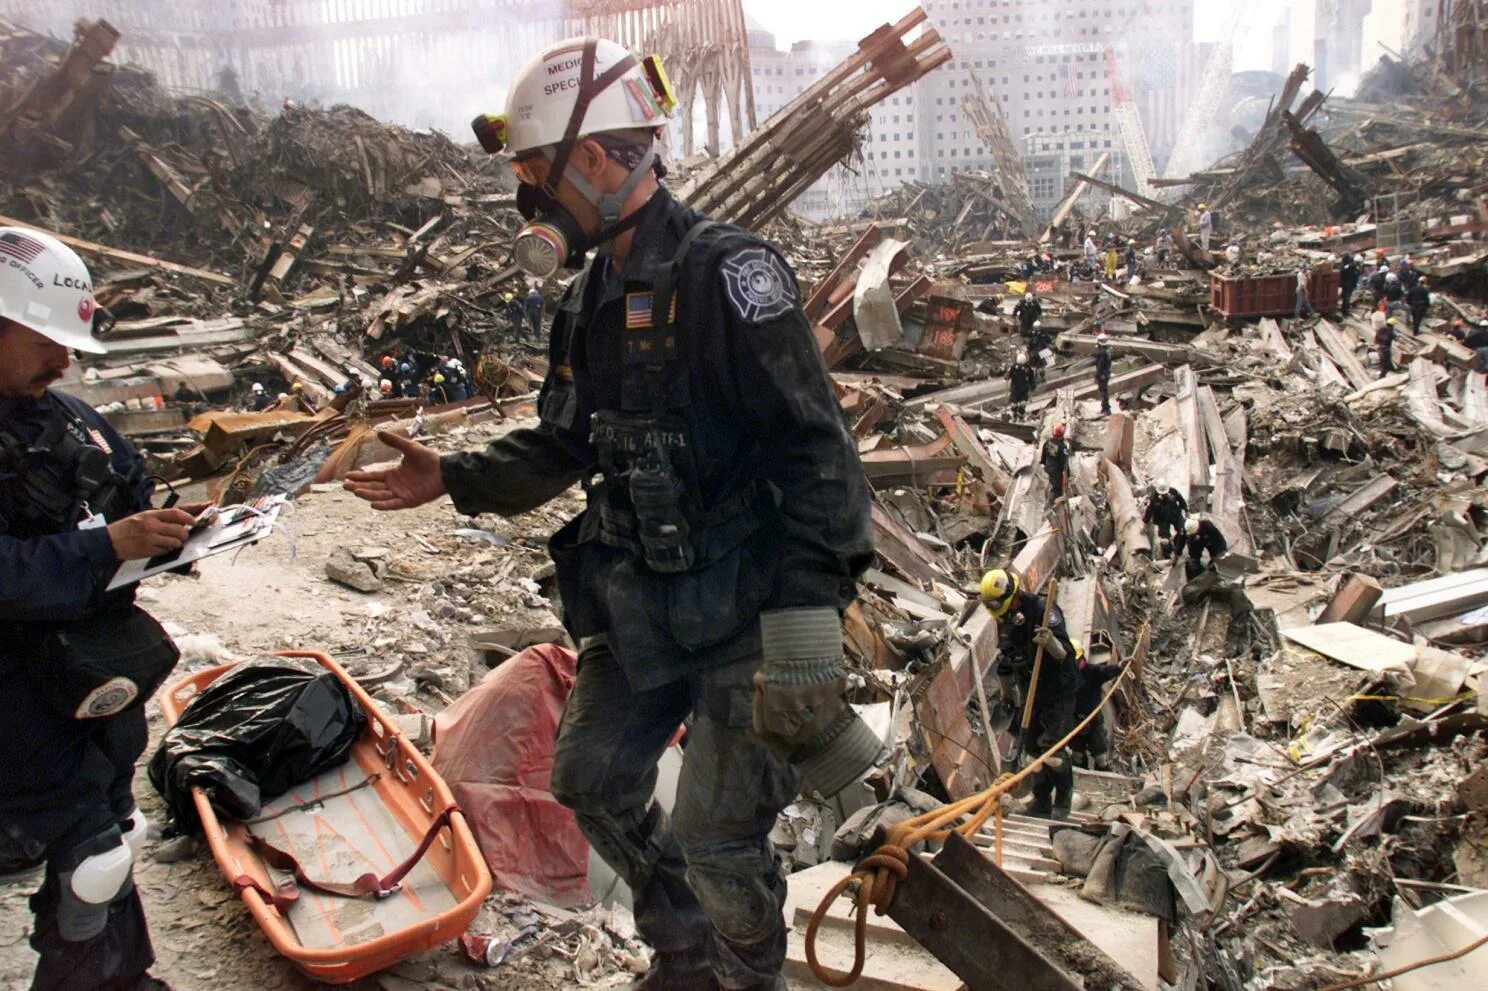 11 Сентября 2001 башни Пентагон. Башни Близнецы 11 сентября жертвы. Теракты 11 сентября 2001 года организация